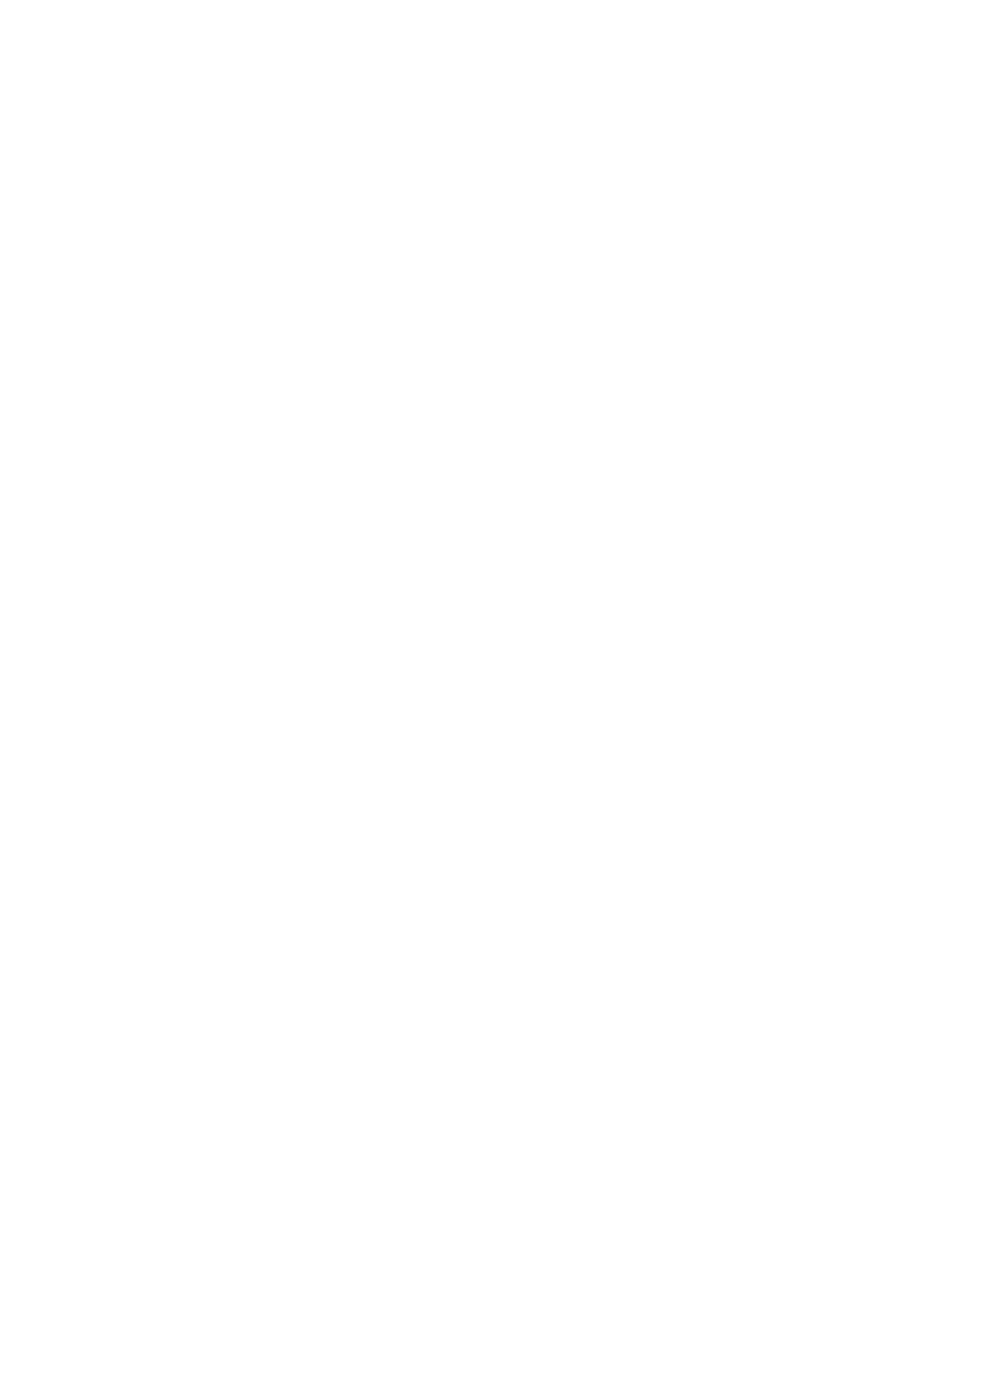 O.C. HOTEL ROMA